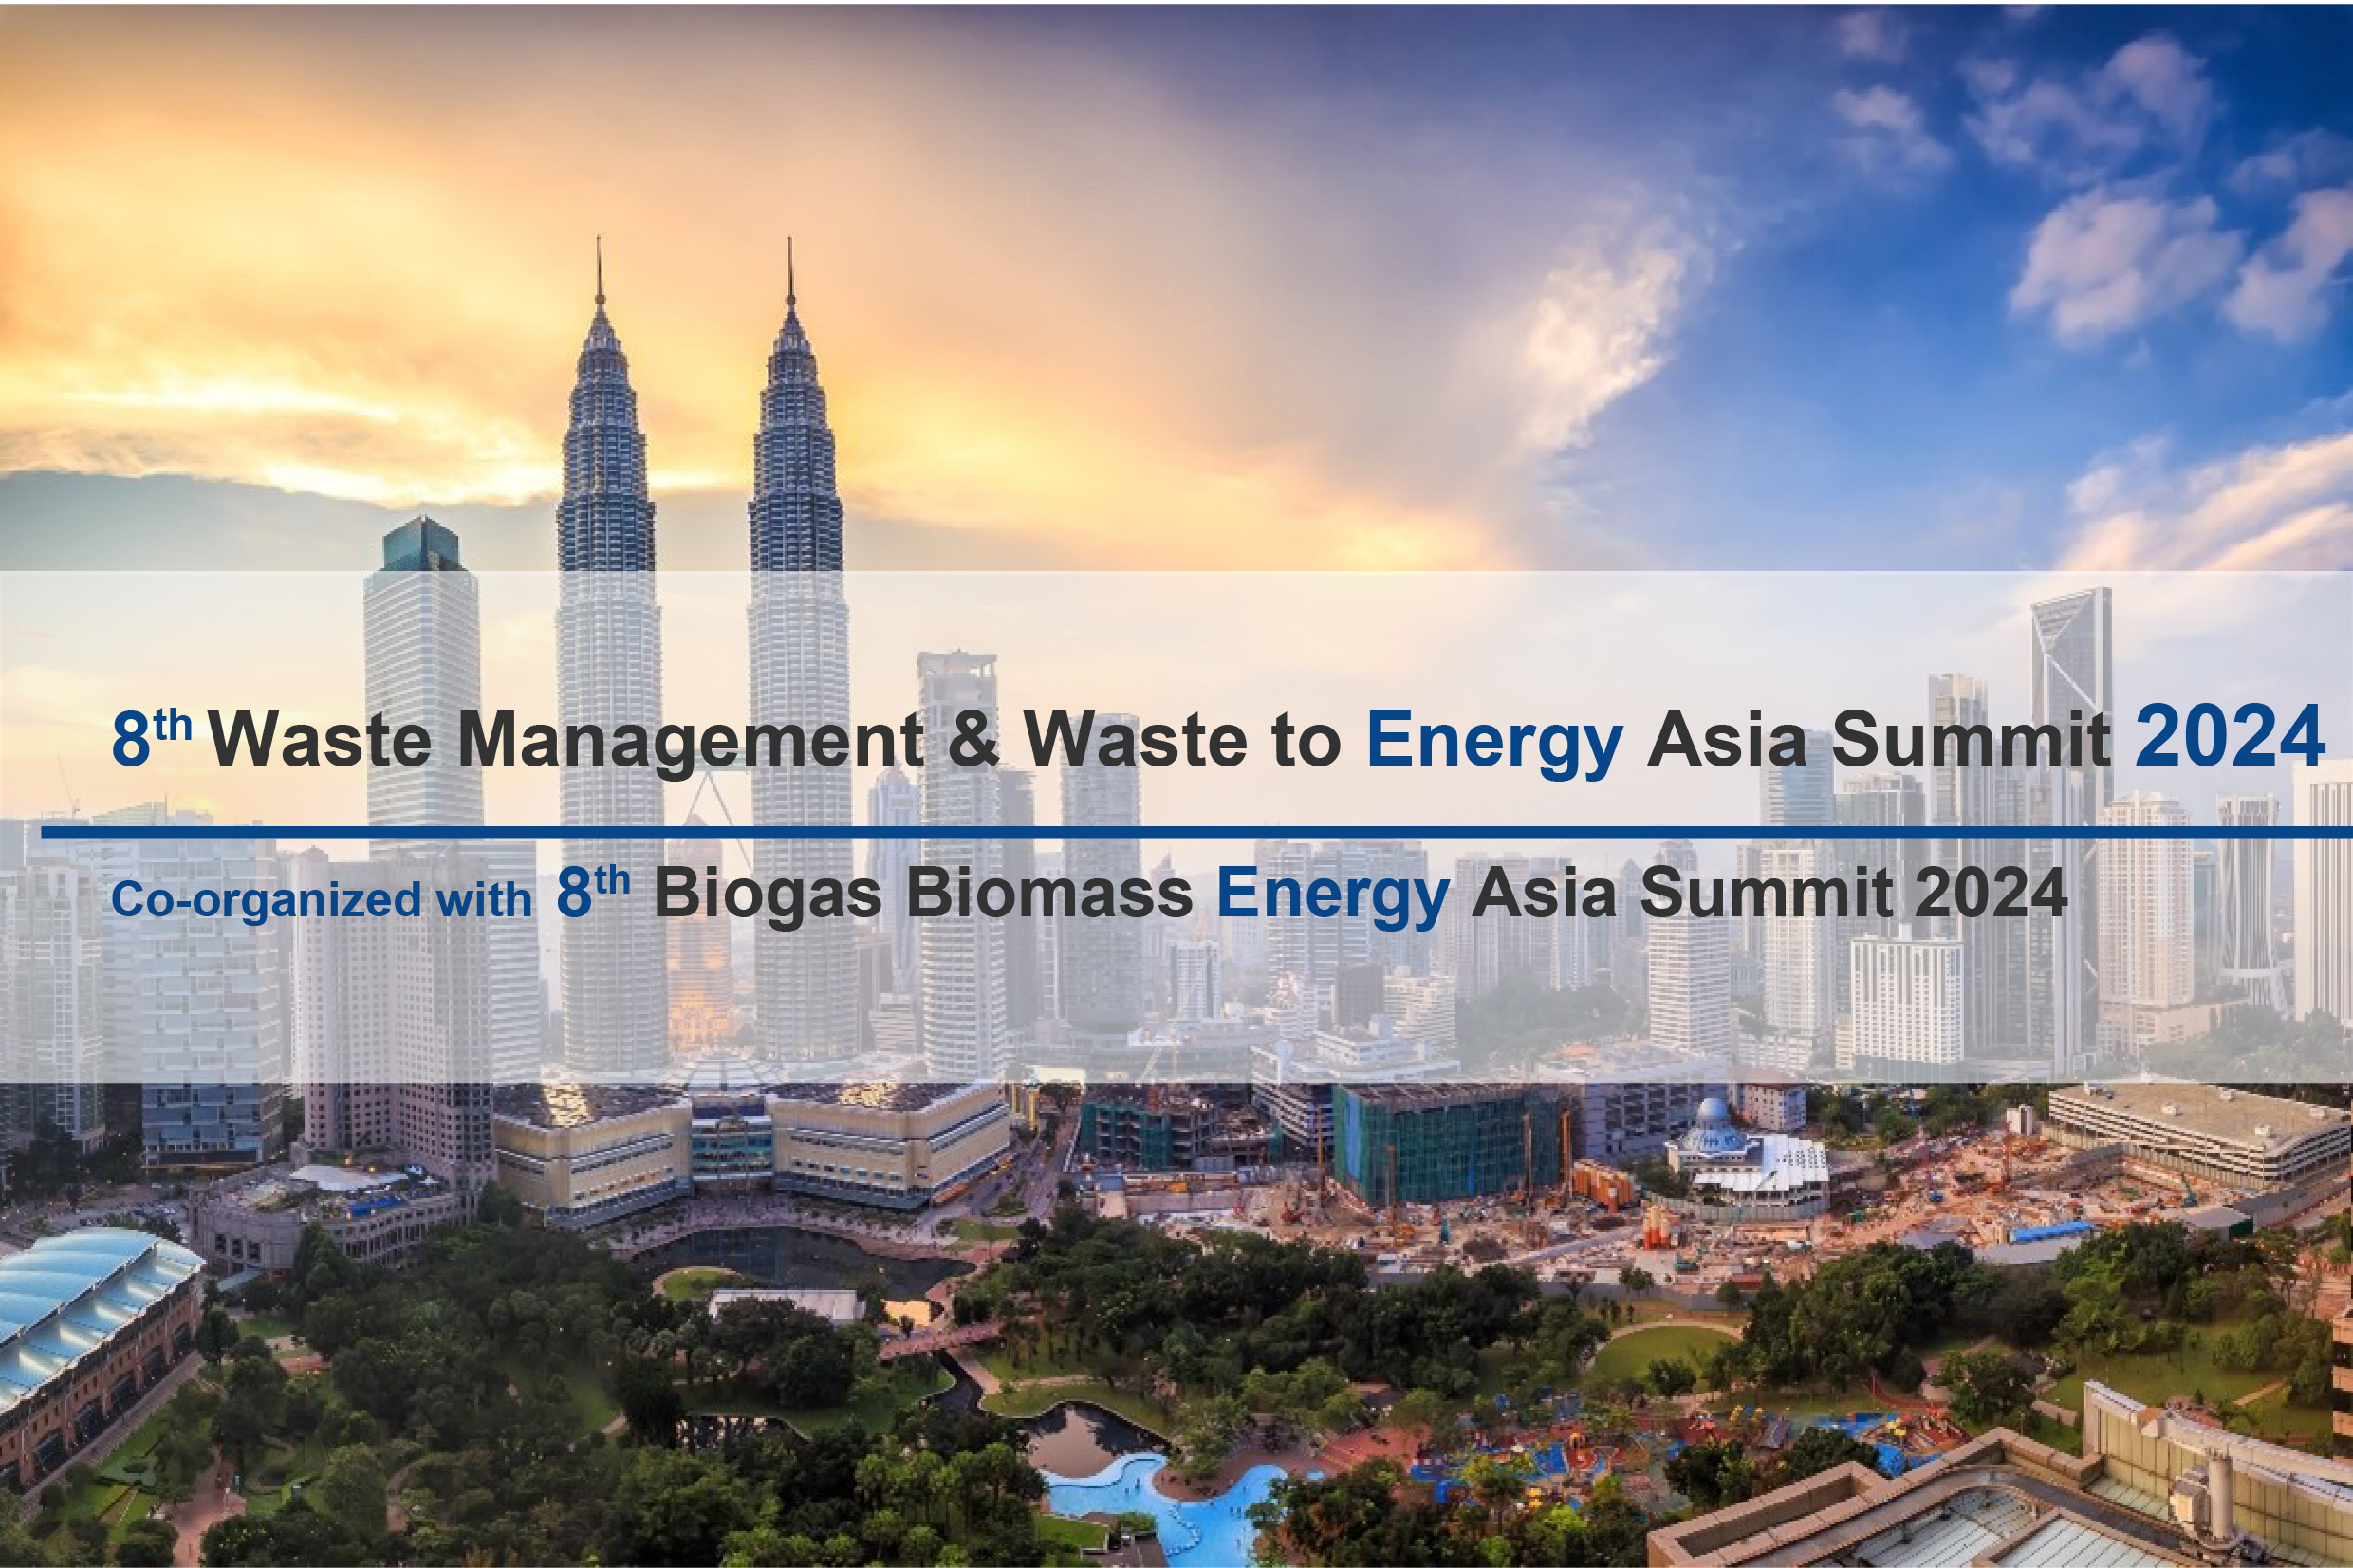 Waste to Energy Asia Summit 2024 Malaysia Focus